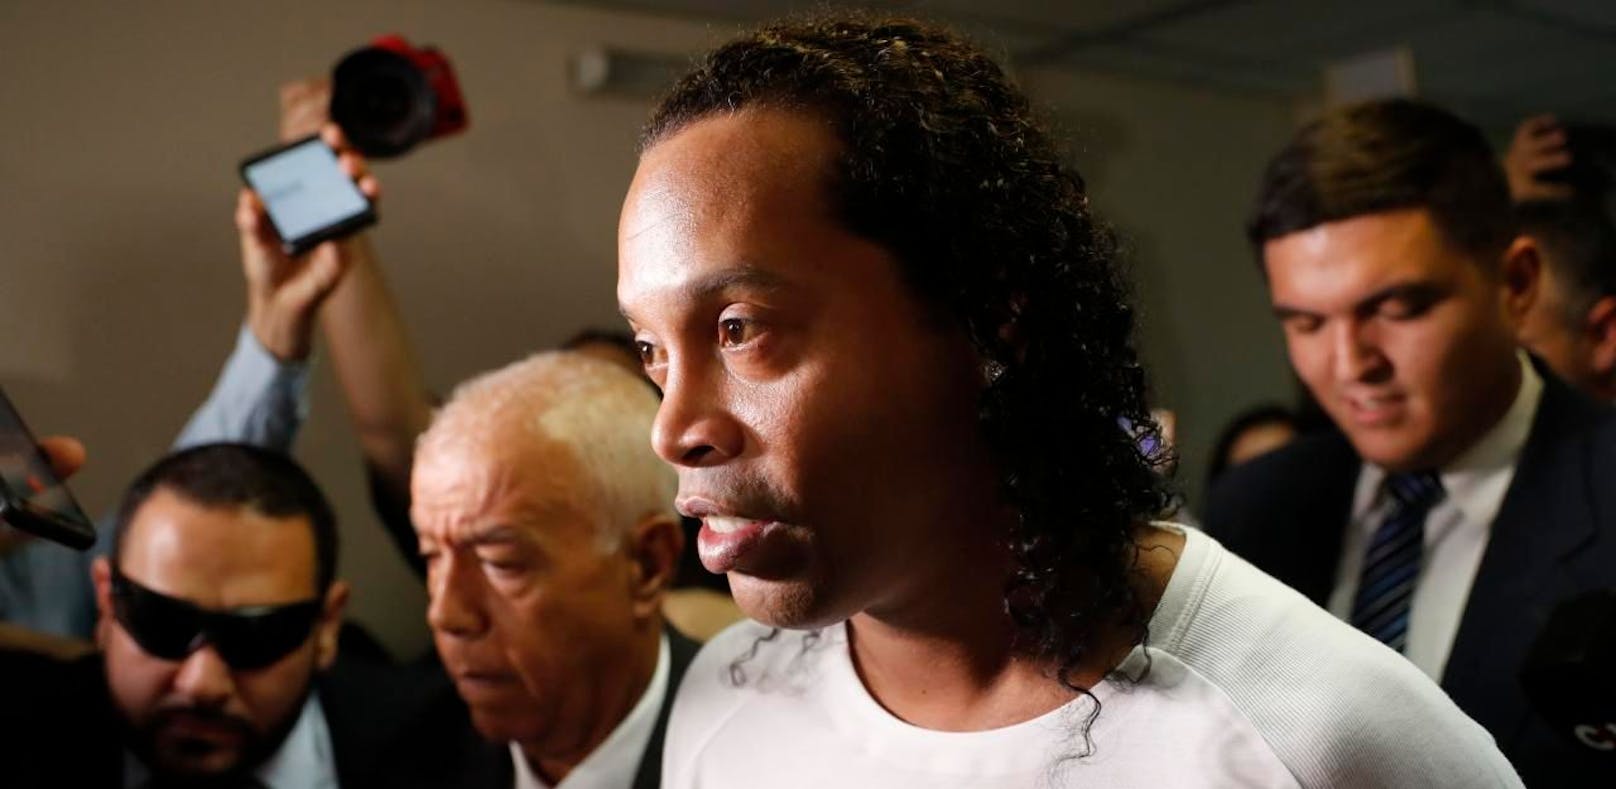 Legende Ronaldinho bleibt in Untersuchungshaft